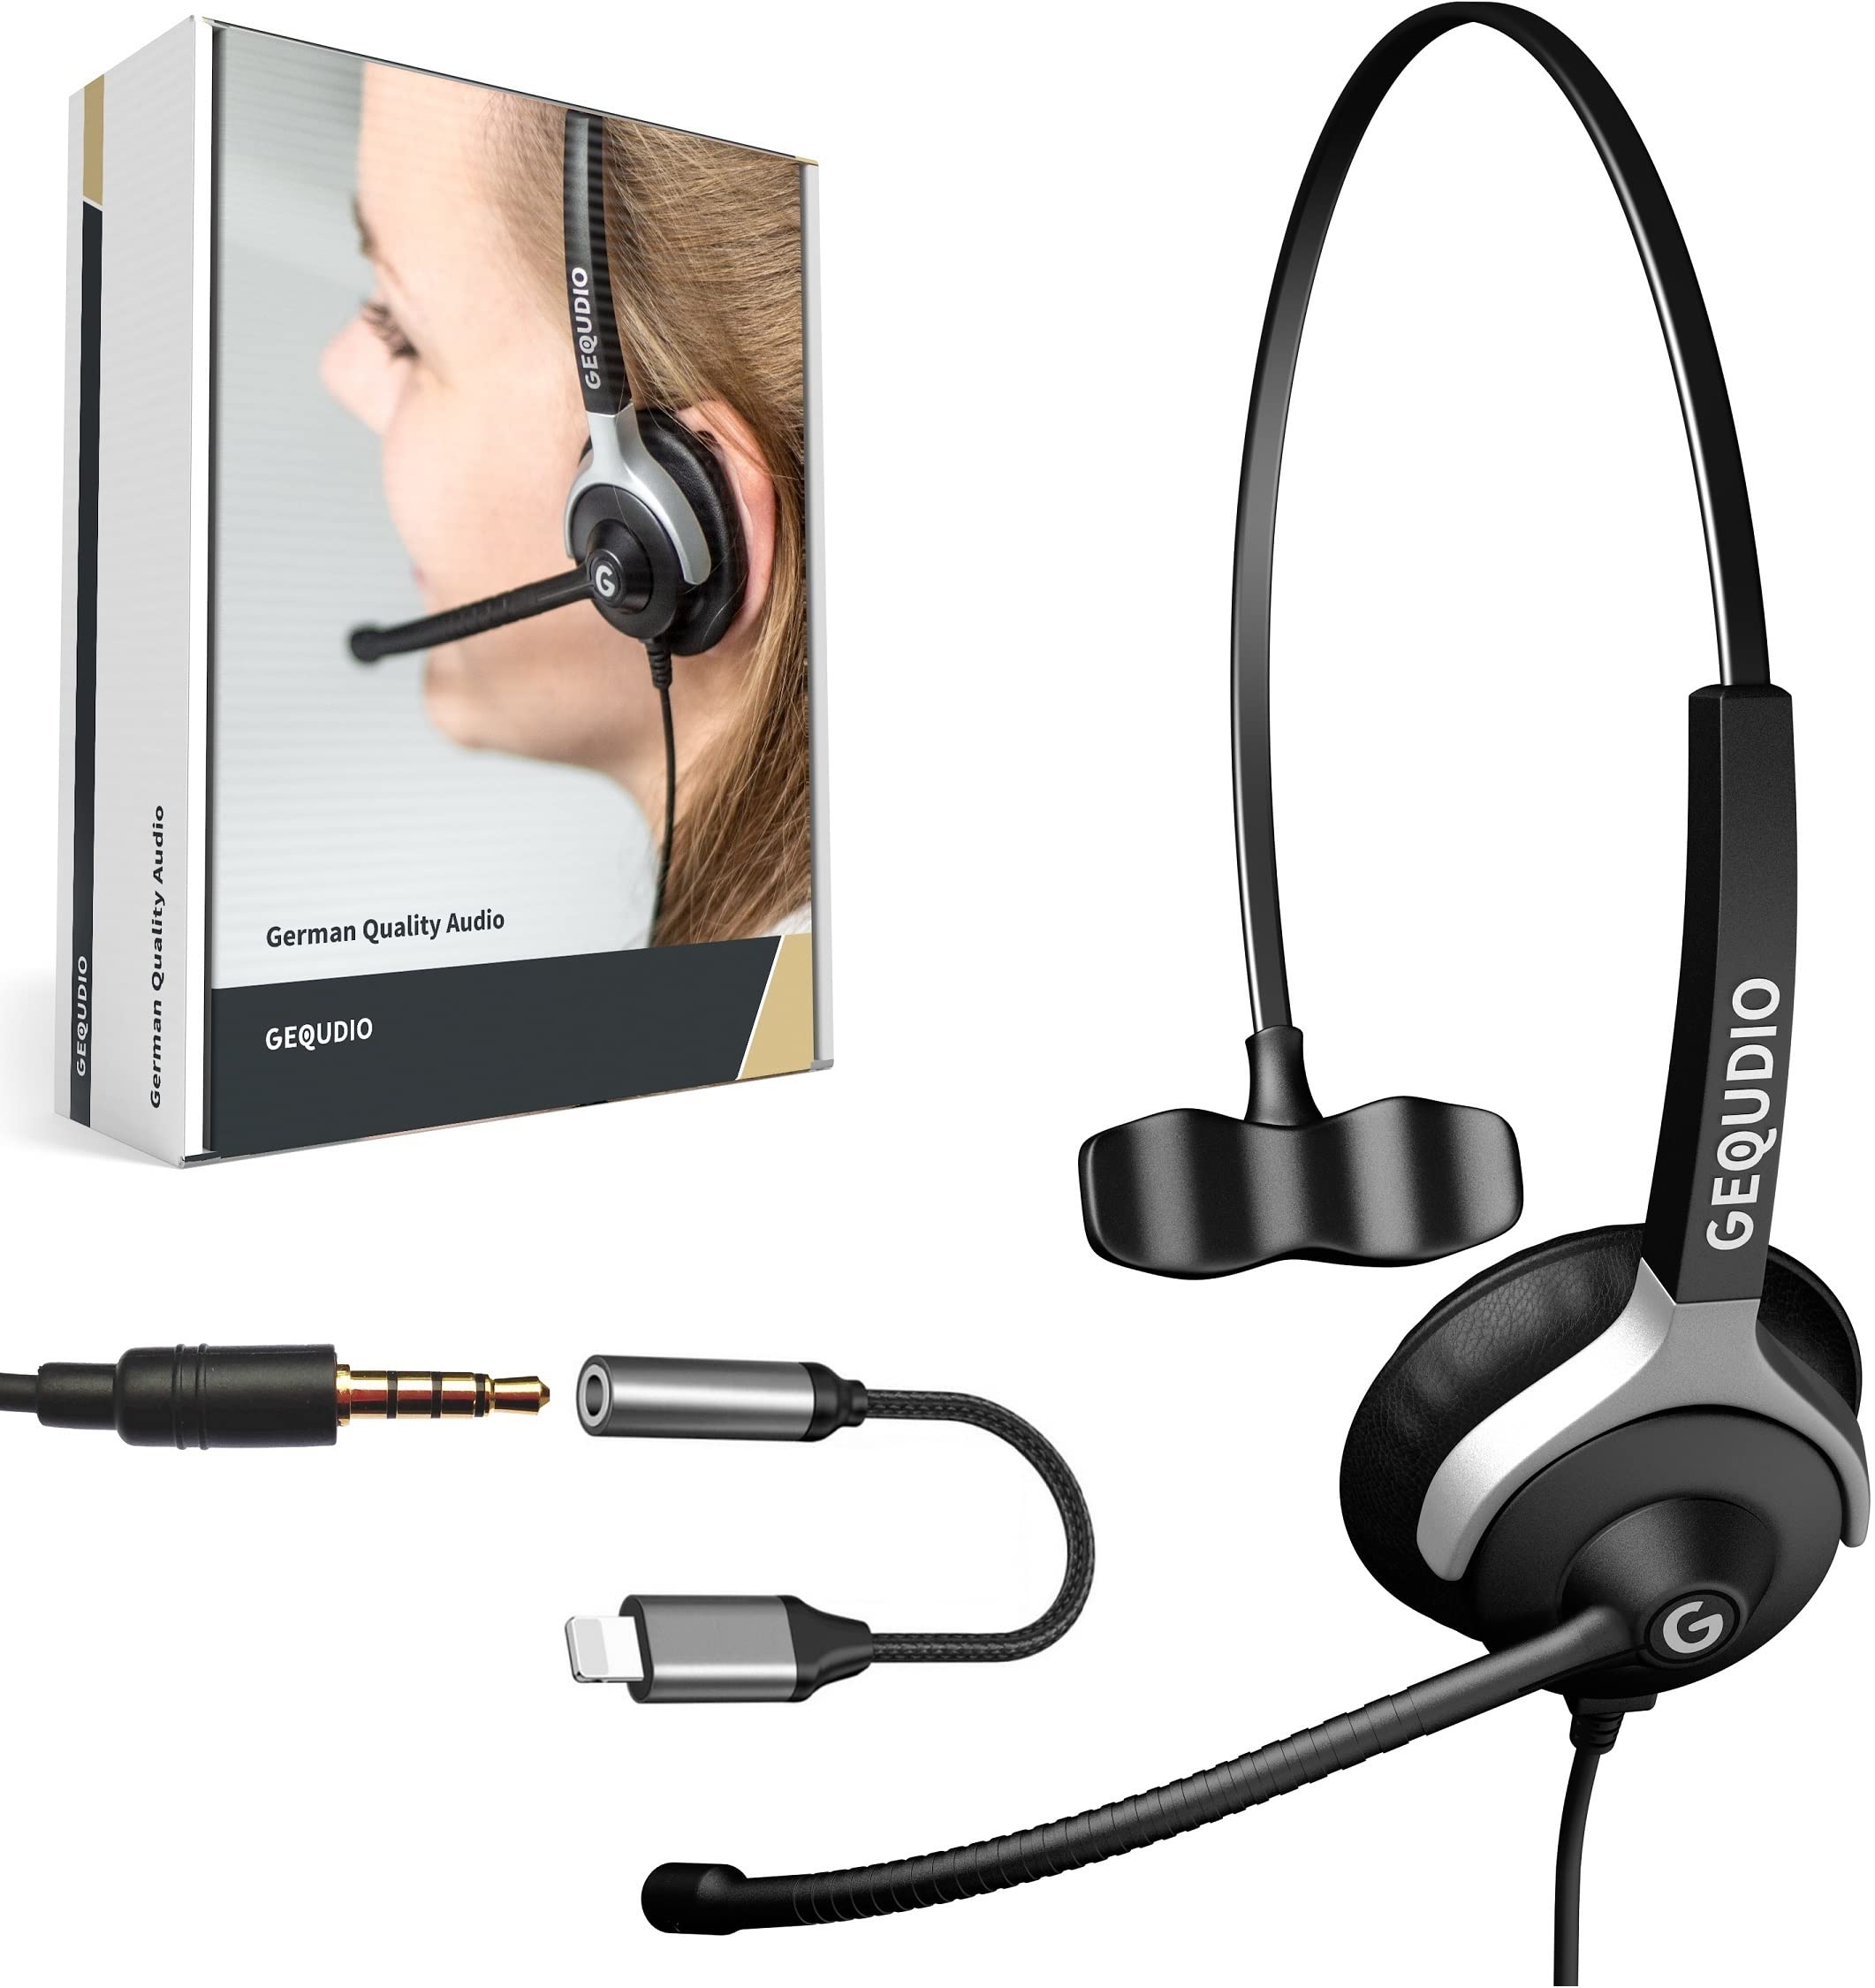 GEQUDIO Headset mit 3,5mm Klinke und Kabel-Adapter kompatibel für iPhone -14-13 -12-11 -X -XS -8-7 -SE (Pro/Max) - Kopfhörer & Mikrofon mit Ersatz Polster - leicht 60g (1-Ohr)